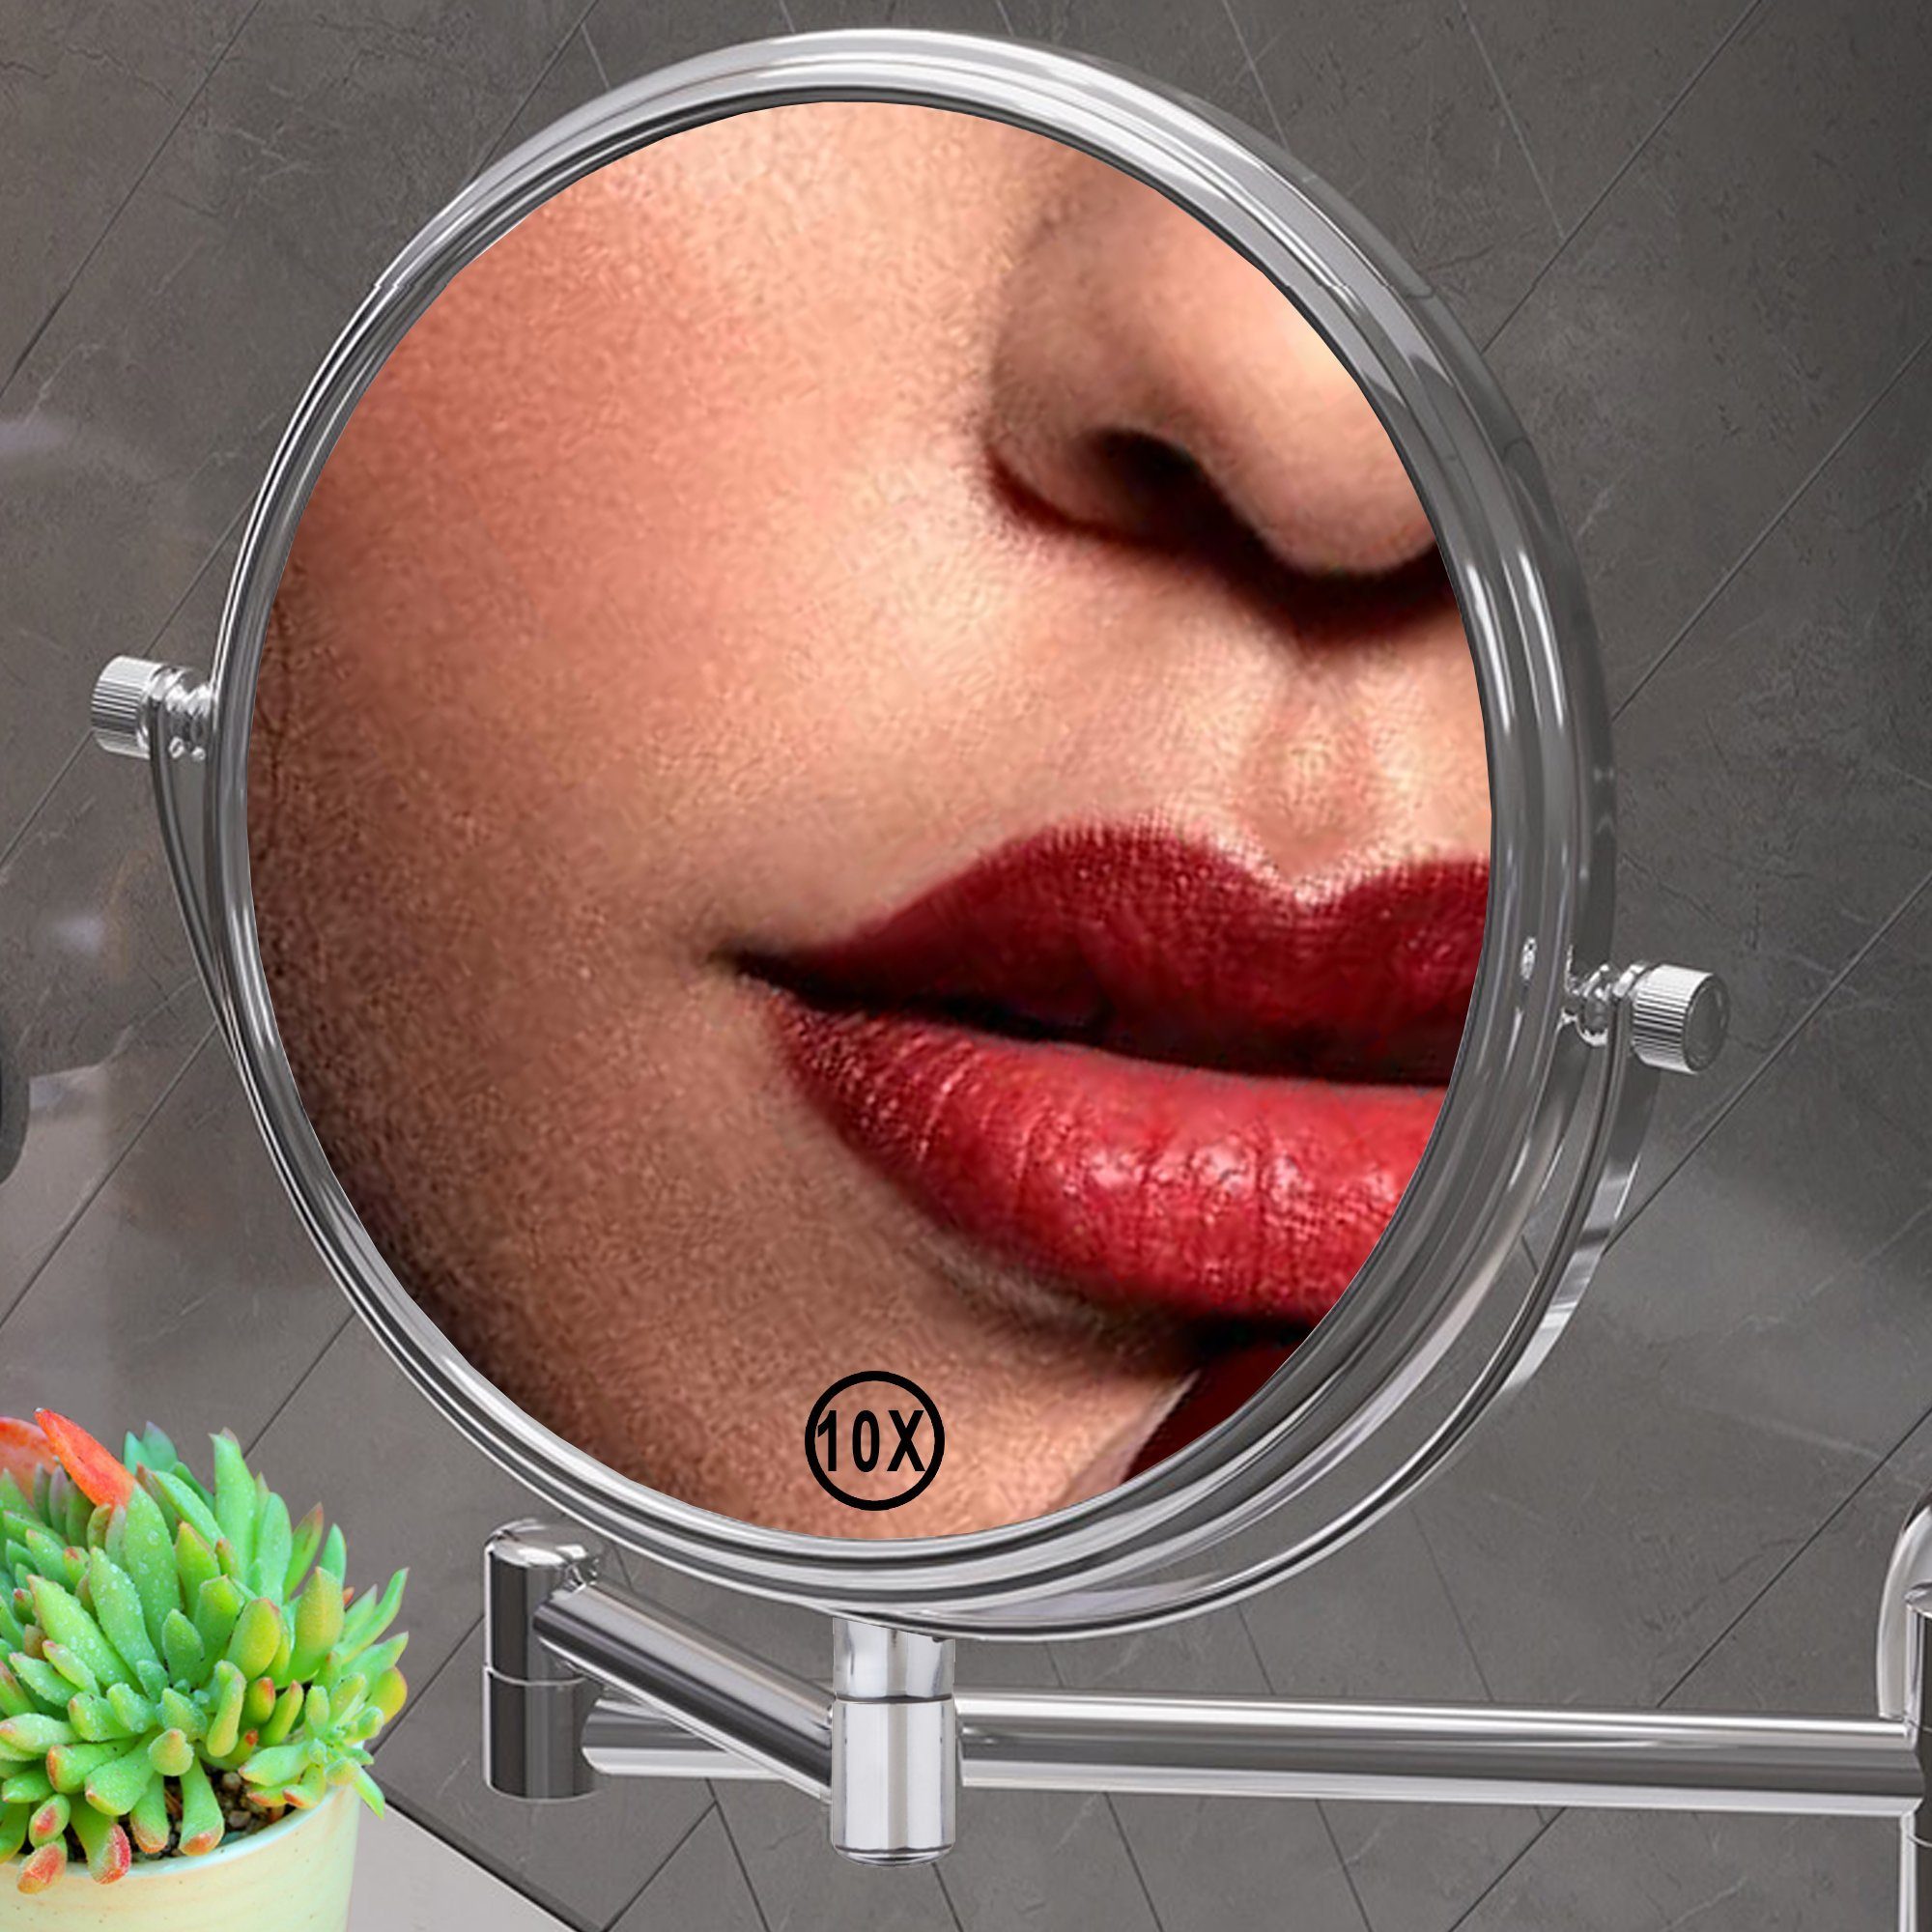 Kosmetikspiegel 10-facher Vergrößerung Wandspiegel (Stück), Kosmetikspiegel 10-fach Melko Schminkspiegel